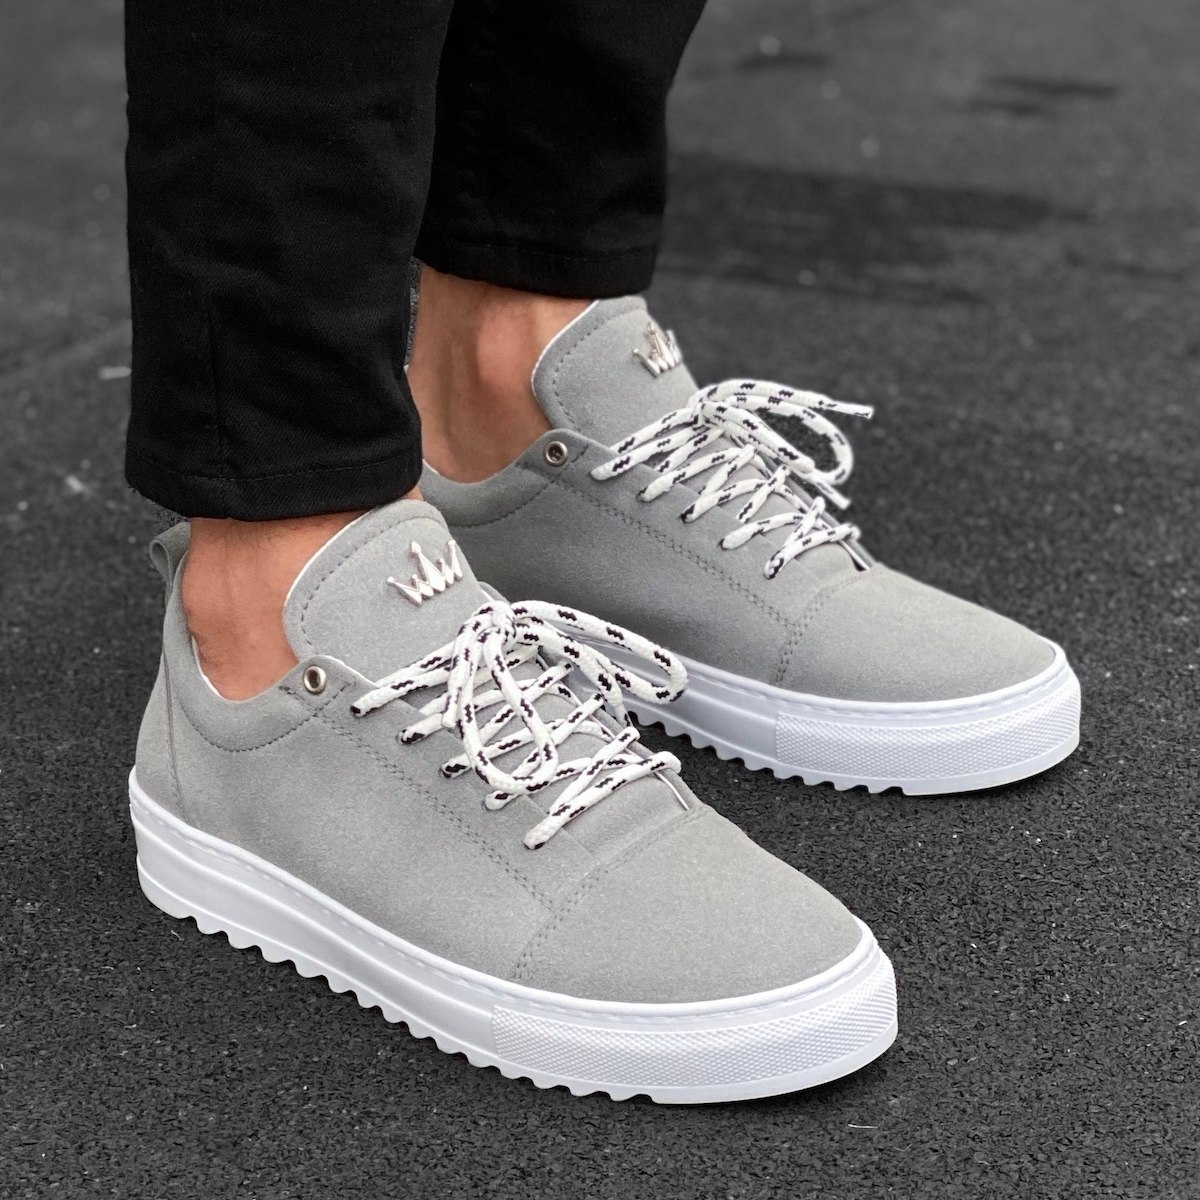 Men’s Low Top Suede Sneakers Shoes Grey | Martin Valen